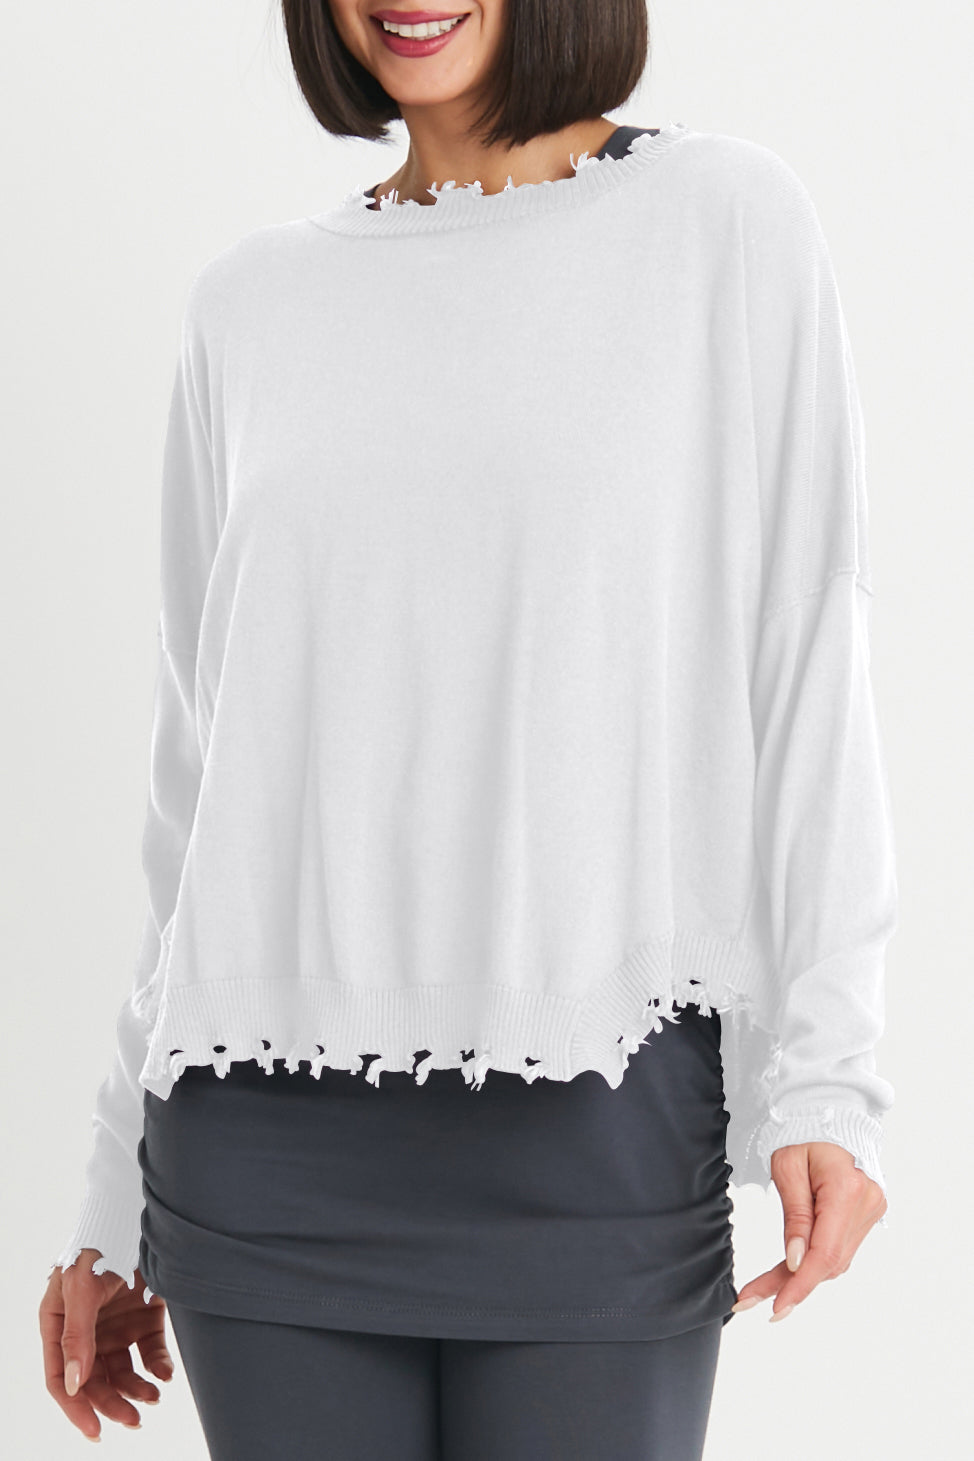 Shabby Chic Sweater White